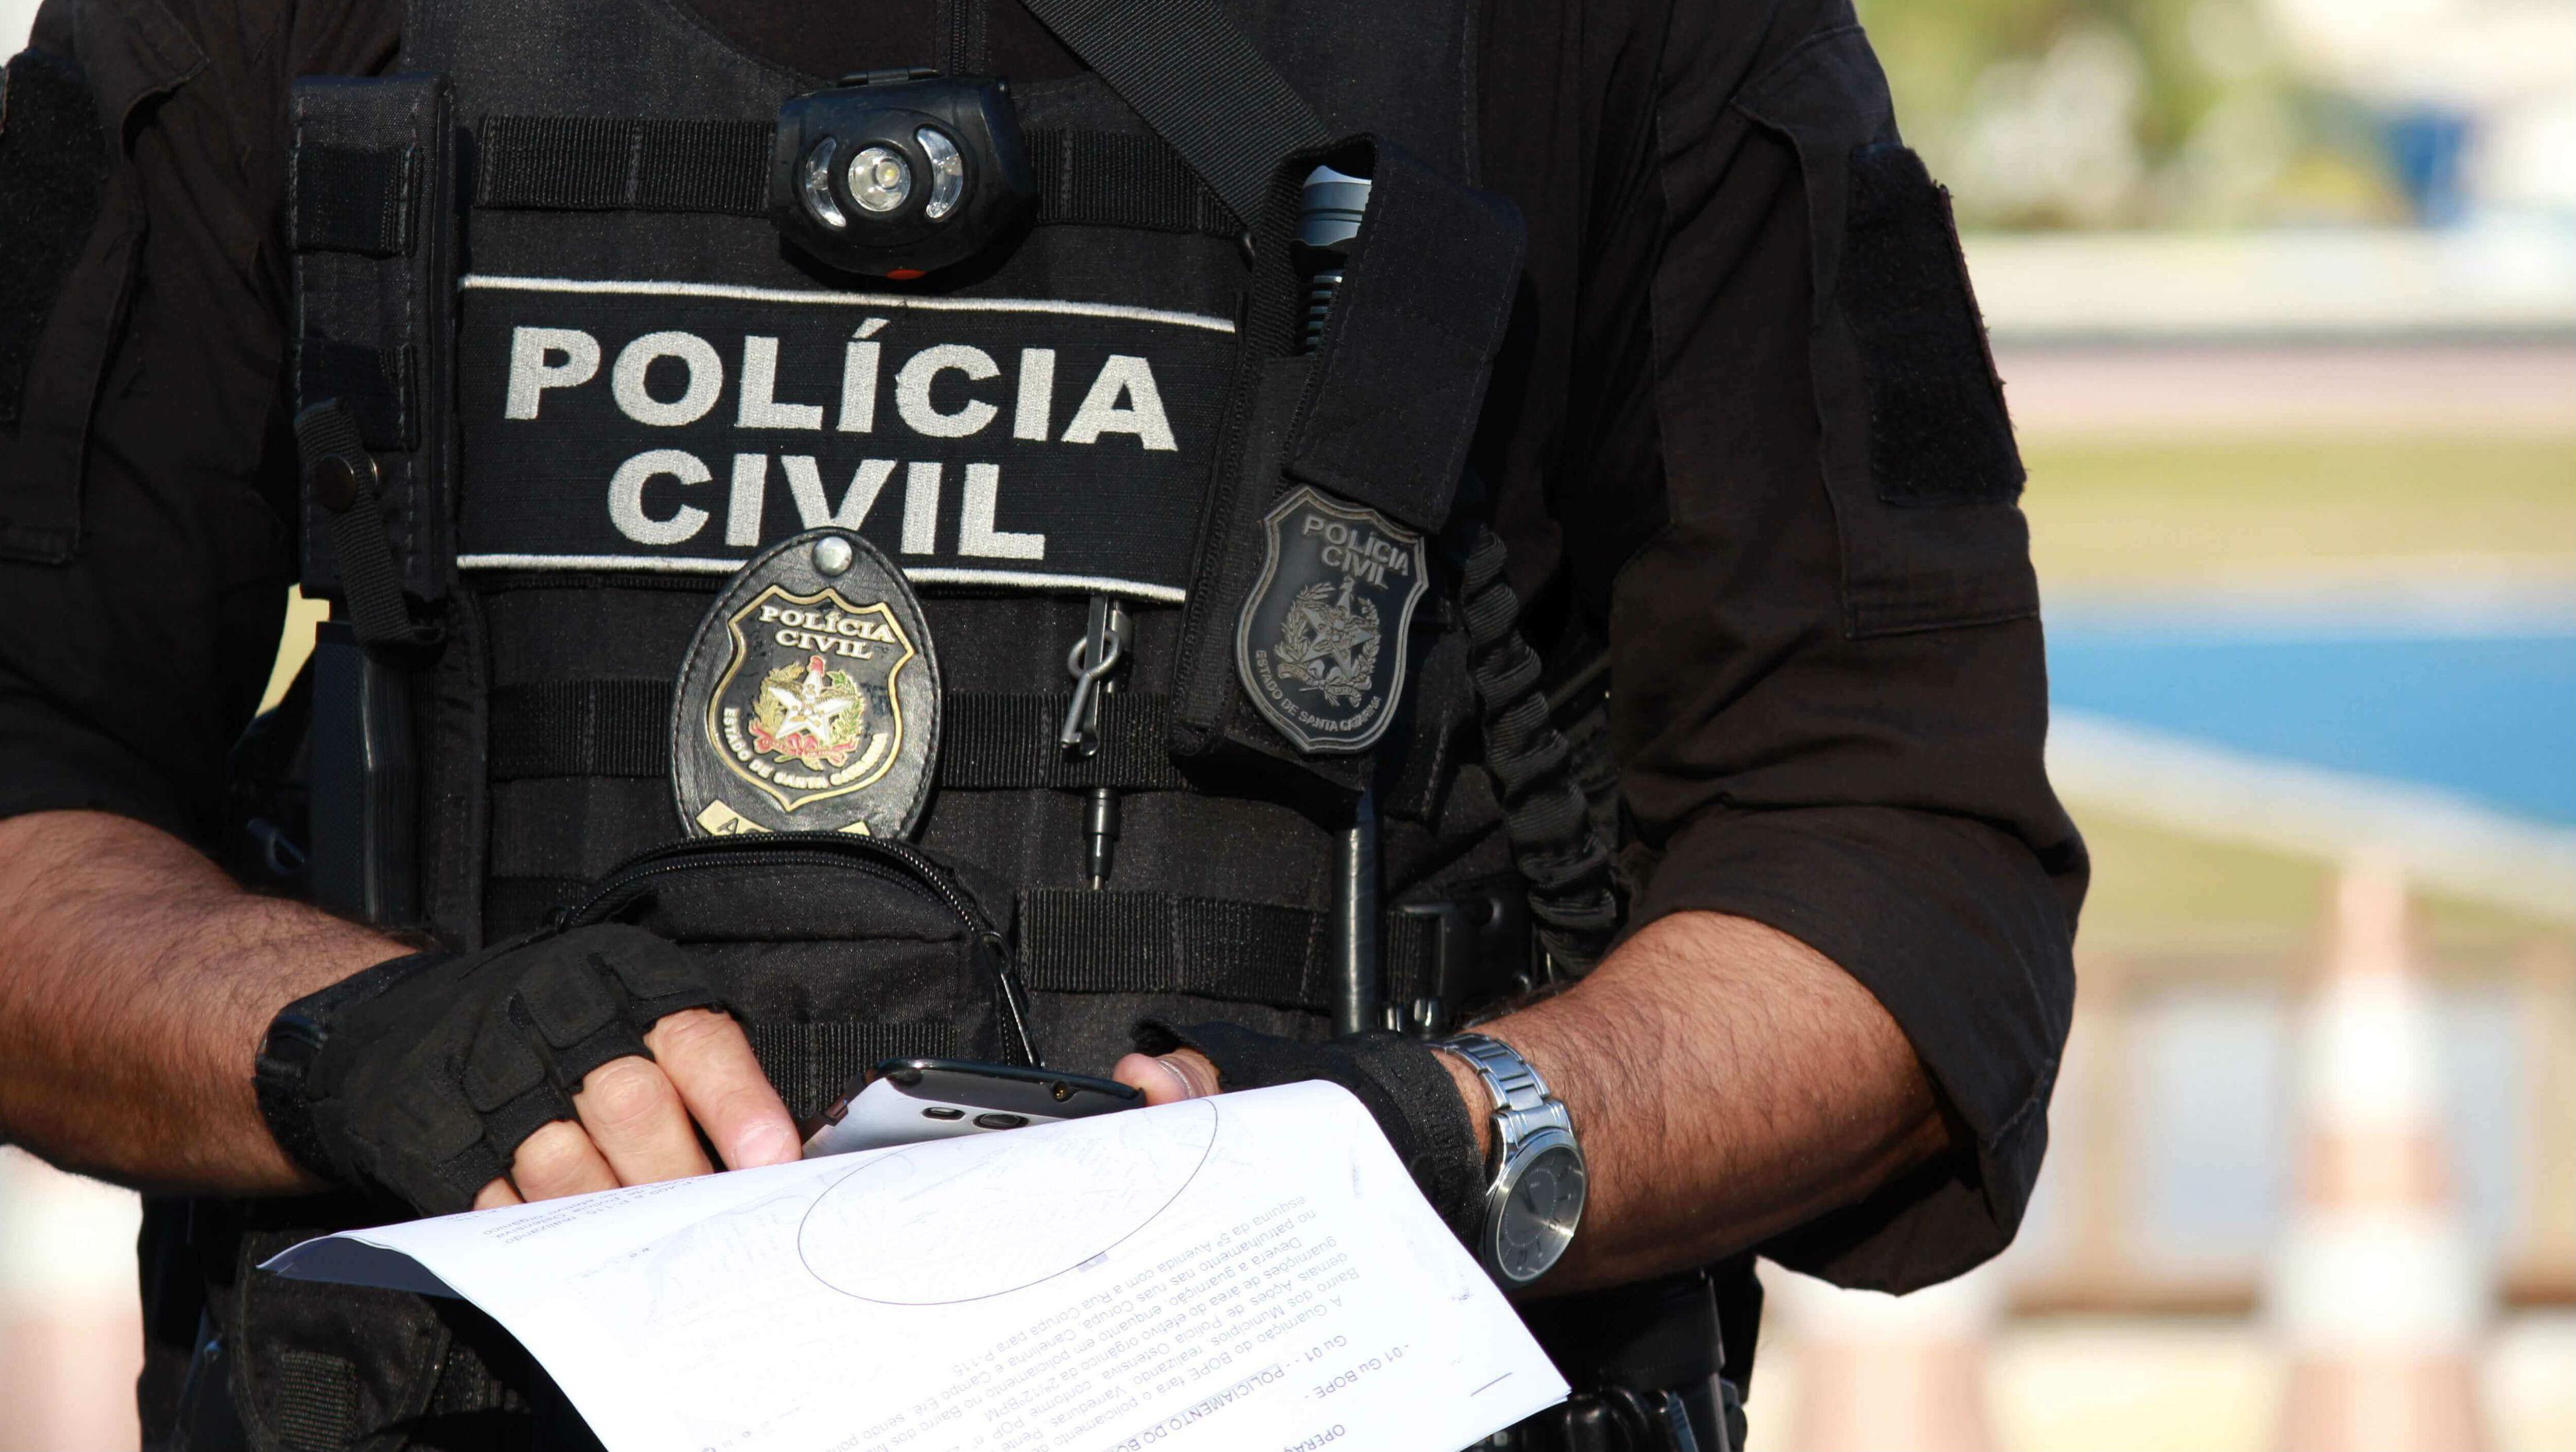 policia-civil-rj